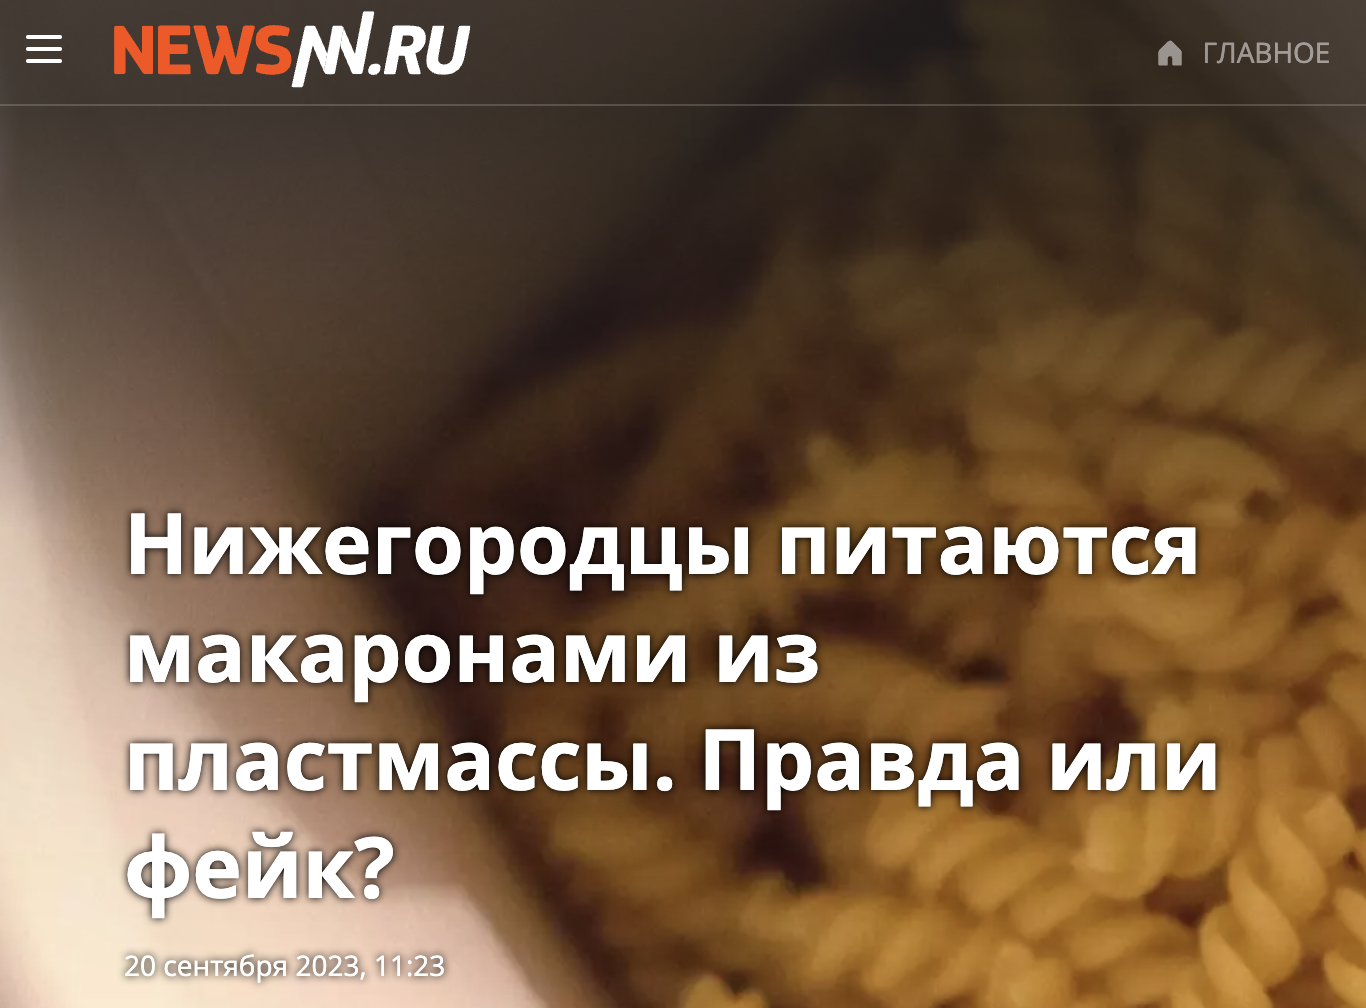 нижегородцы питаются макаронами из пластмассы правда или фейк